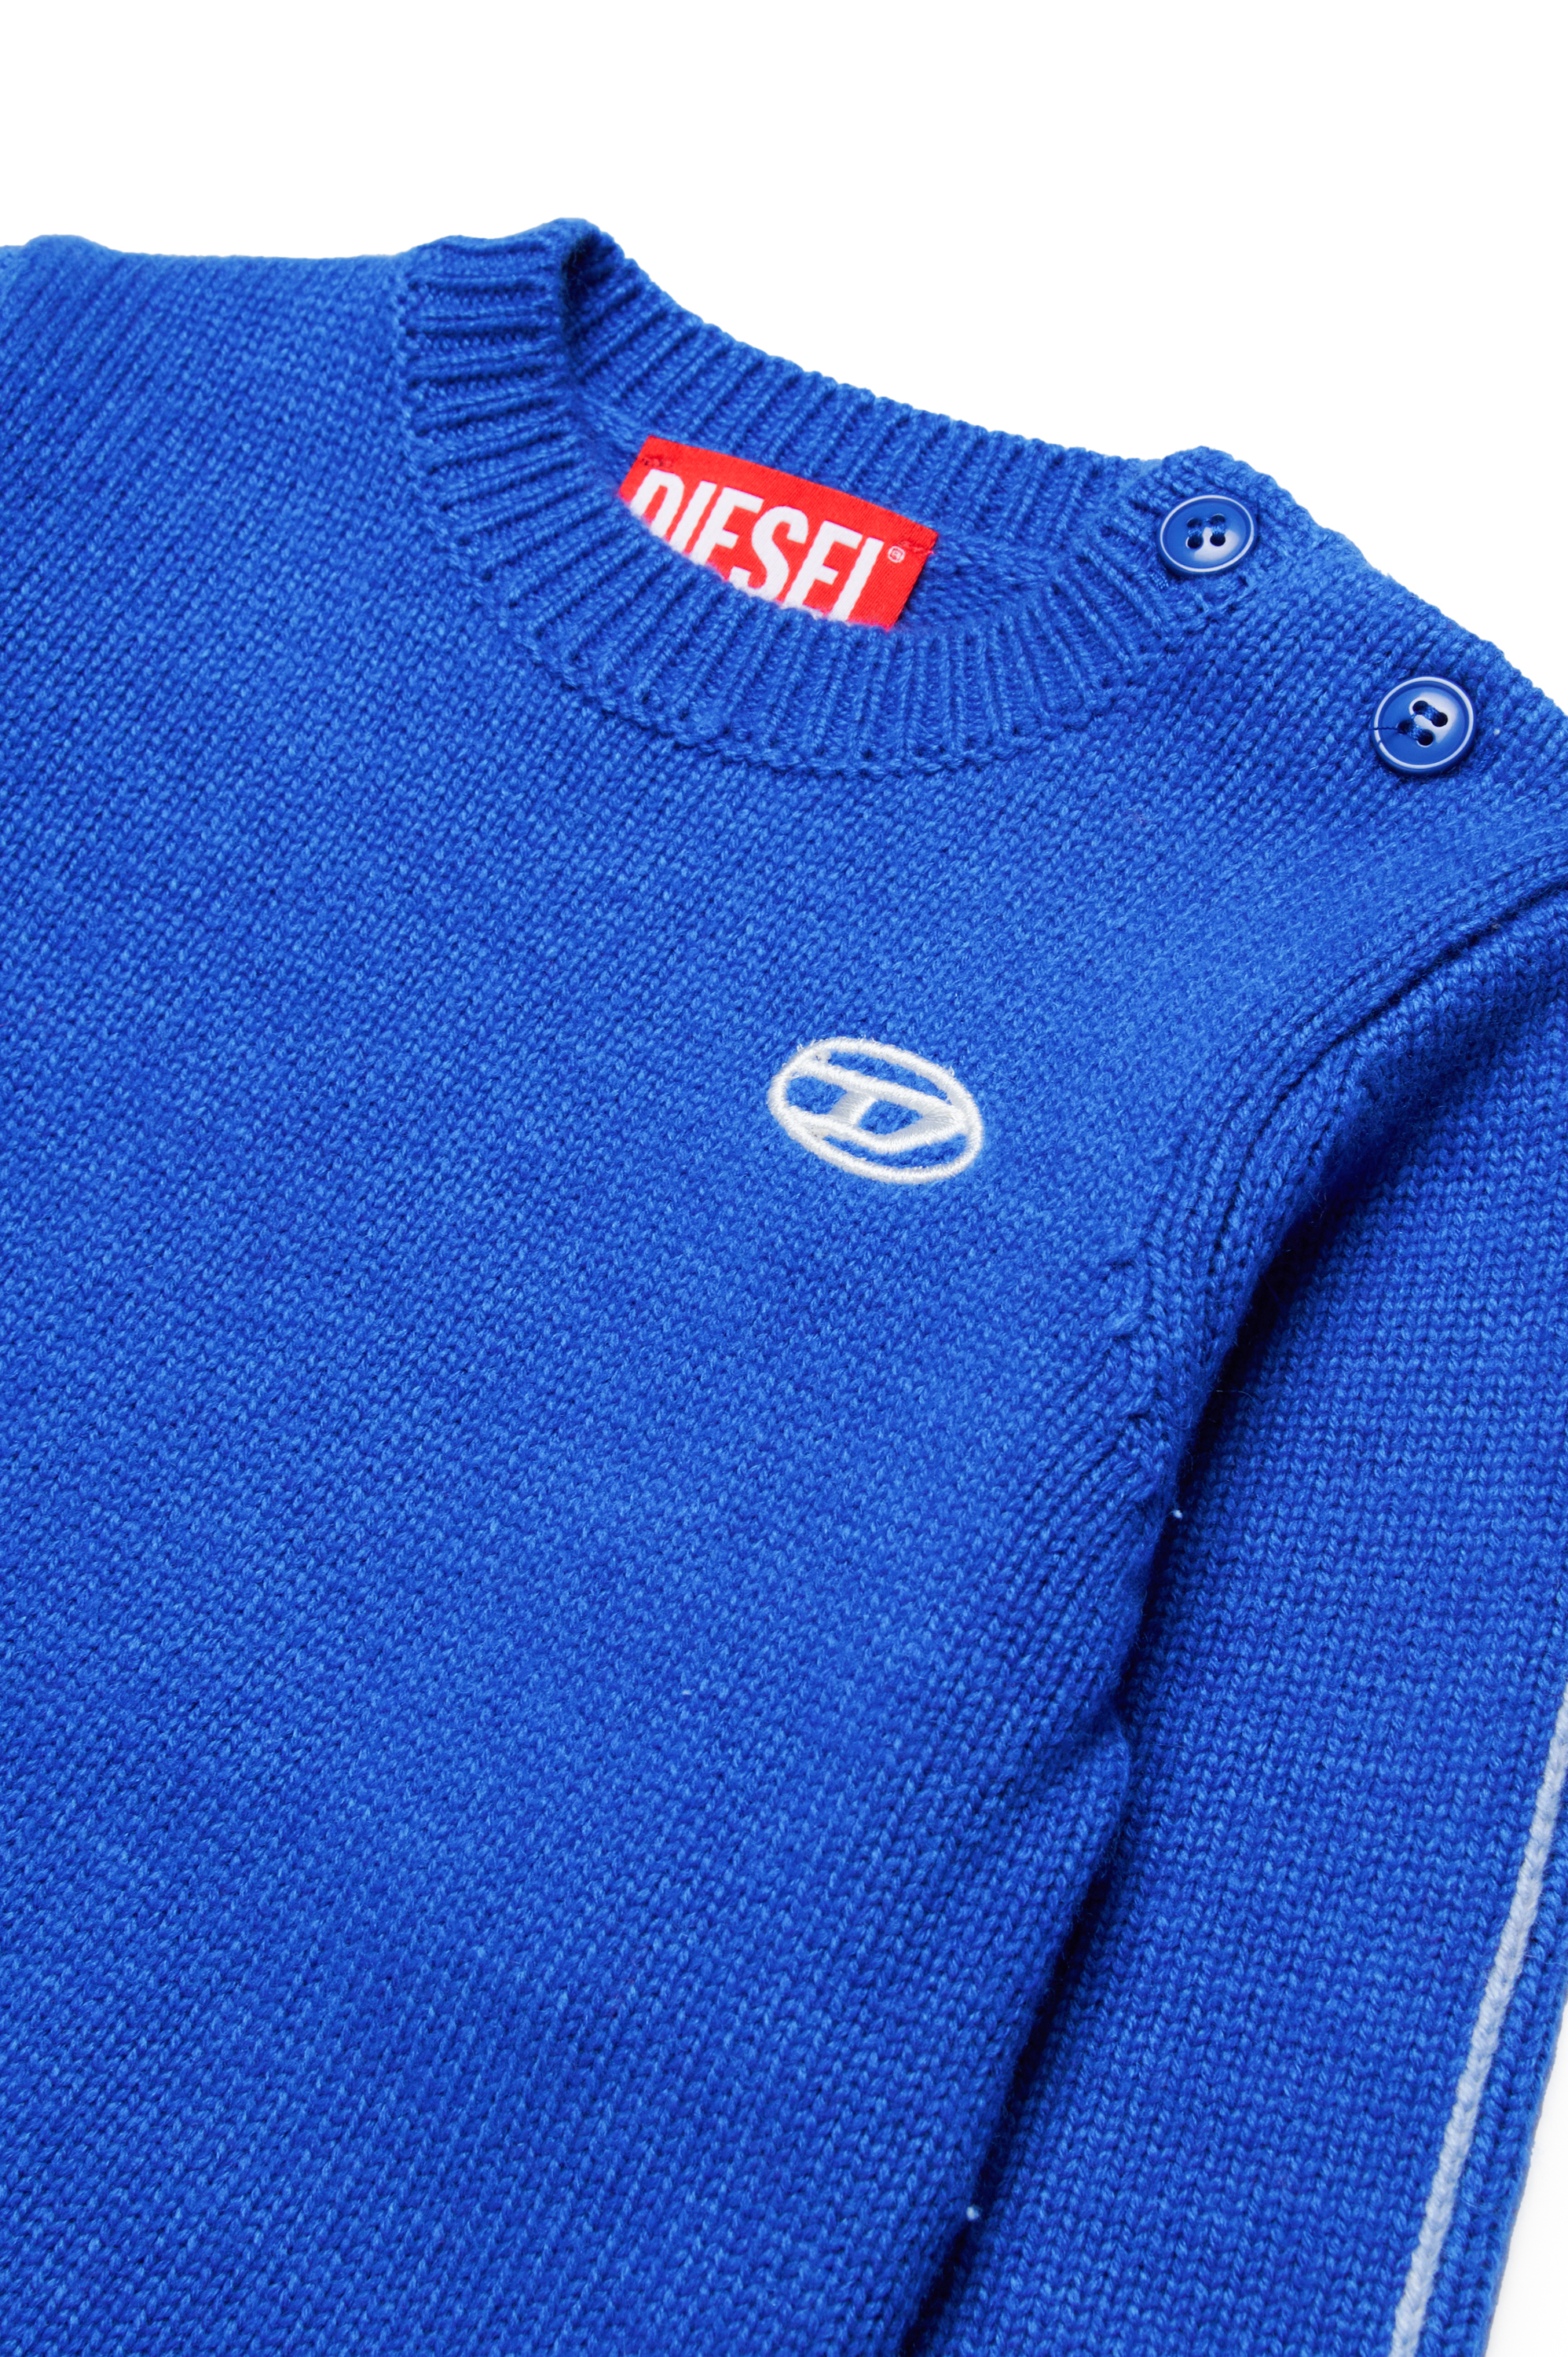 Diesel - KJOSIB, Unisex Piped jumper in cashmere-enriched blend in Blue - Image 3